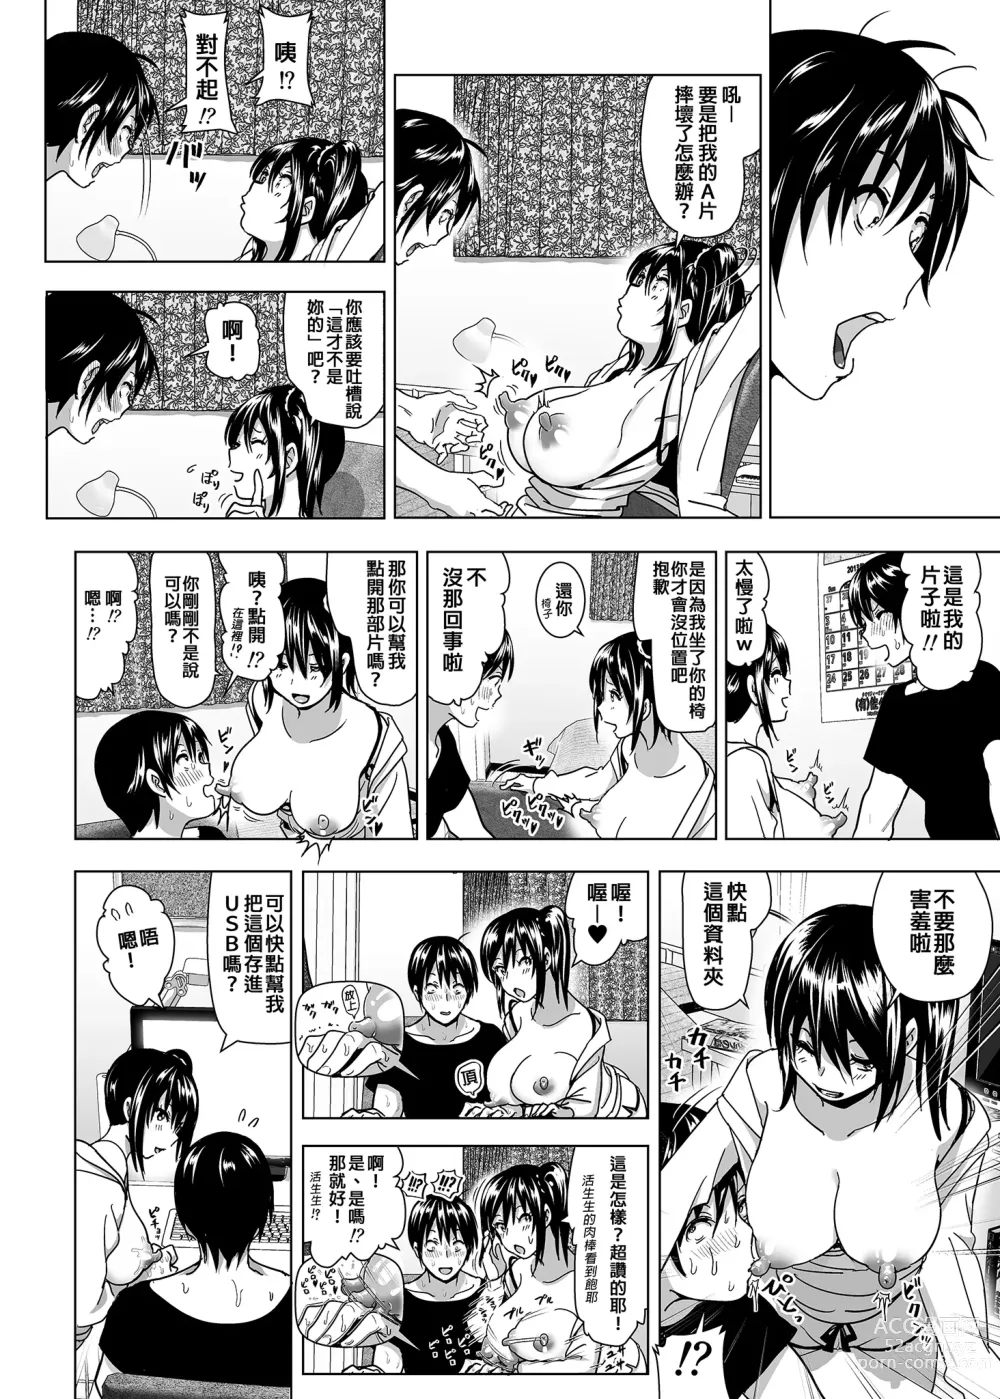 Page 10 of doujinshi 關於妹妹胸部整顆露出來的那件事 總集篇2 (decensored)